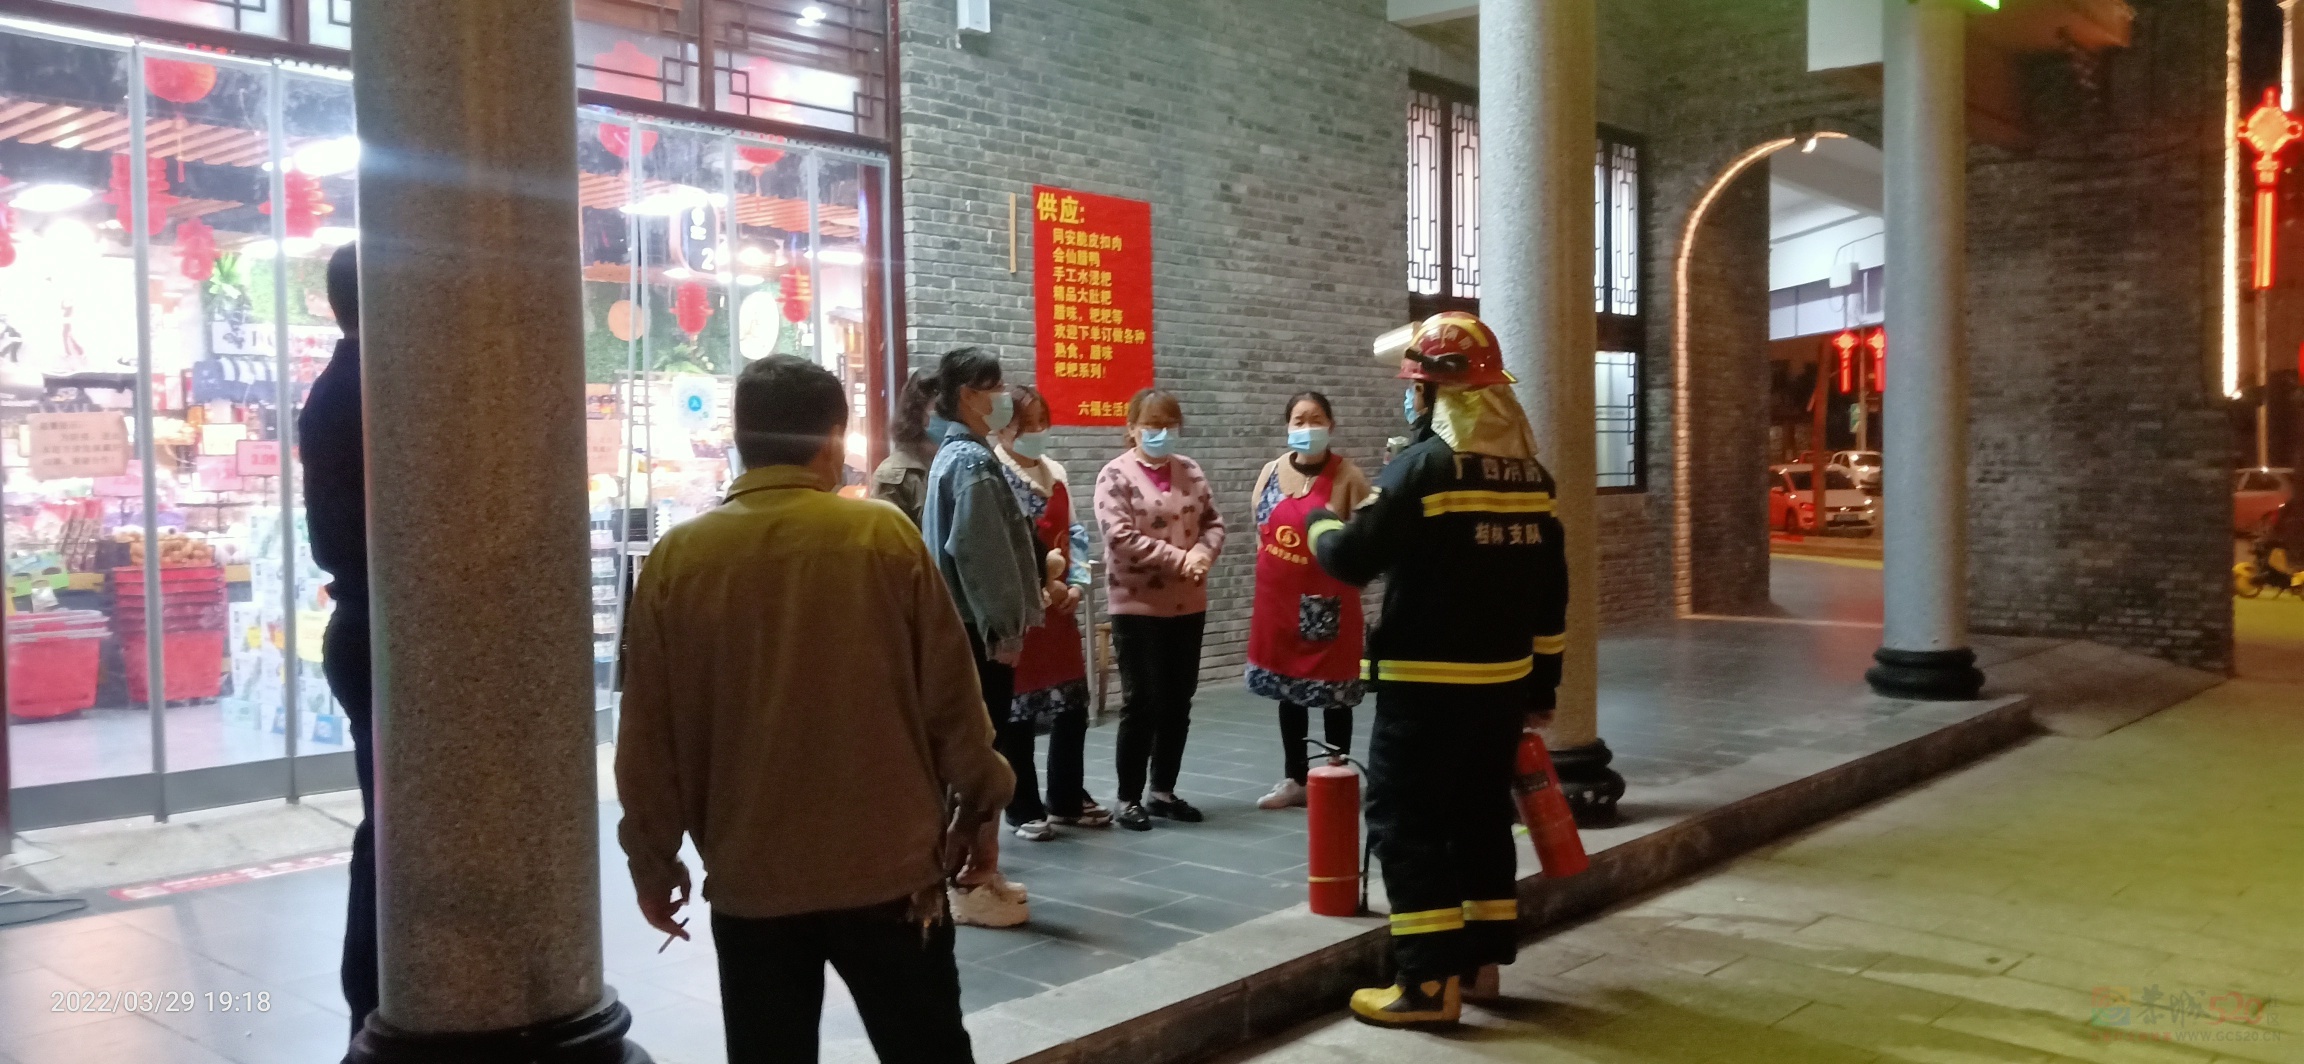 昨晚偶遇消防人员在油茶小镇的六福超市演练消防394 / 作者:陈爱国 / 帖子ID:294073